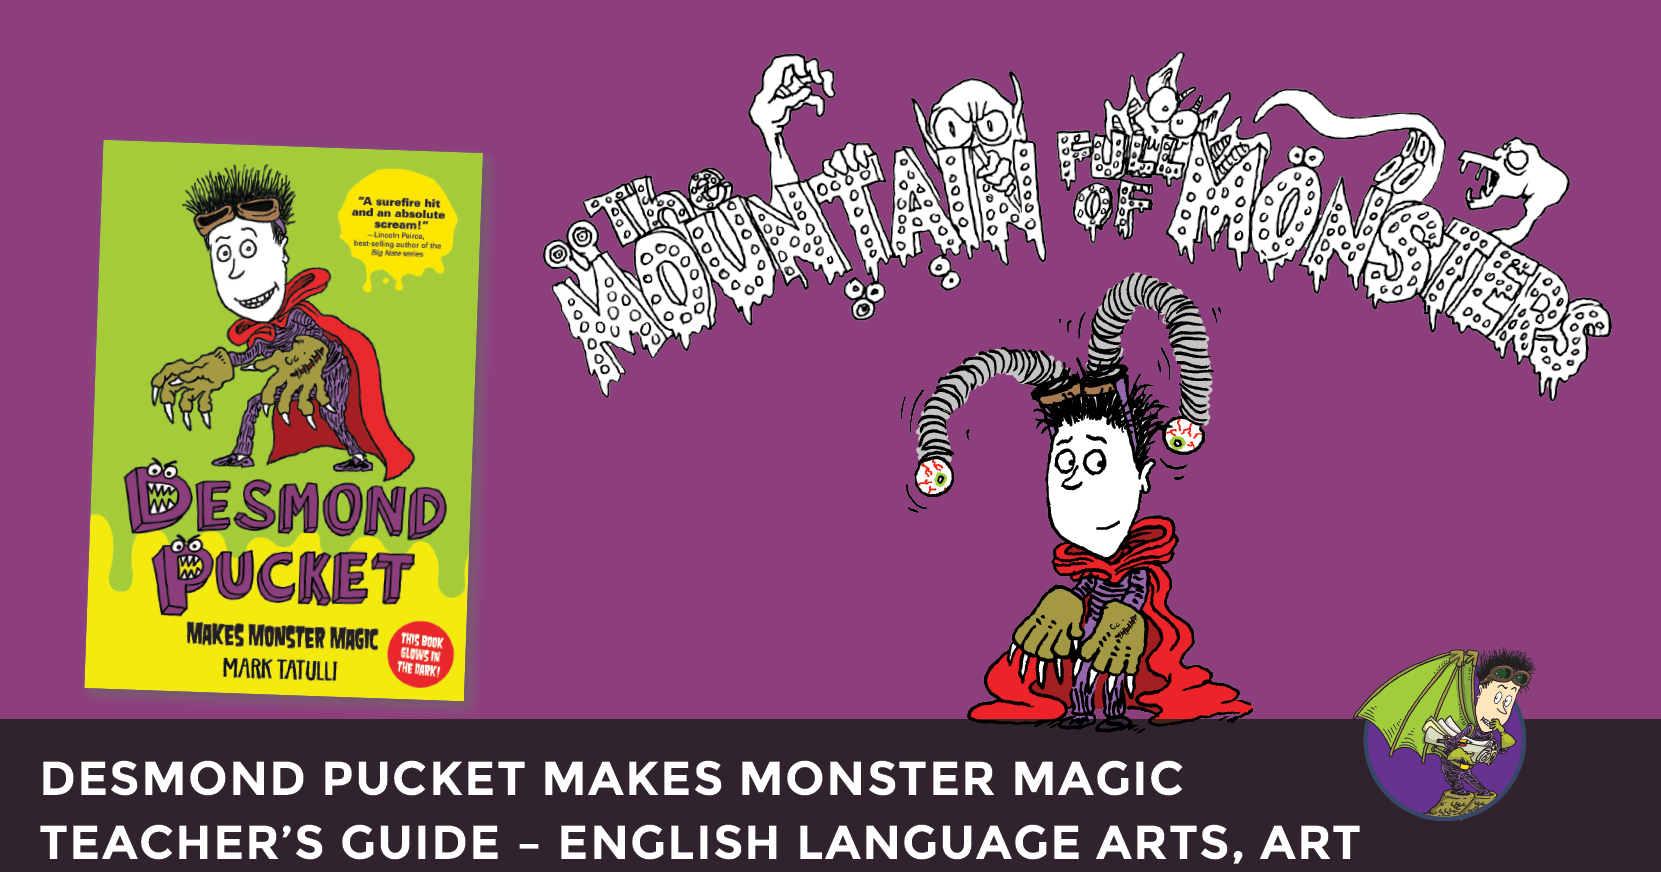 Desmond pucket makes monster magic pdf free download windows 10